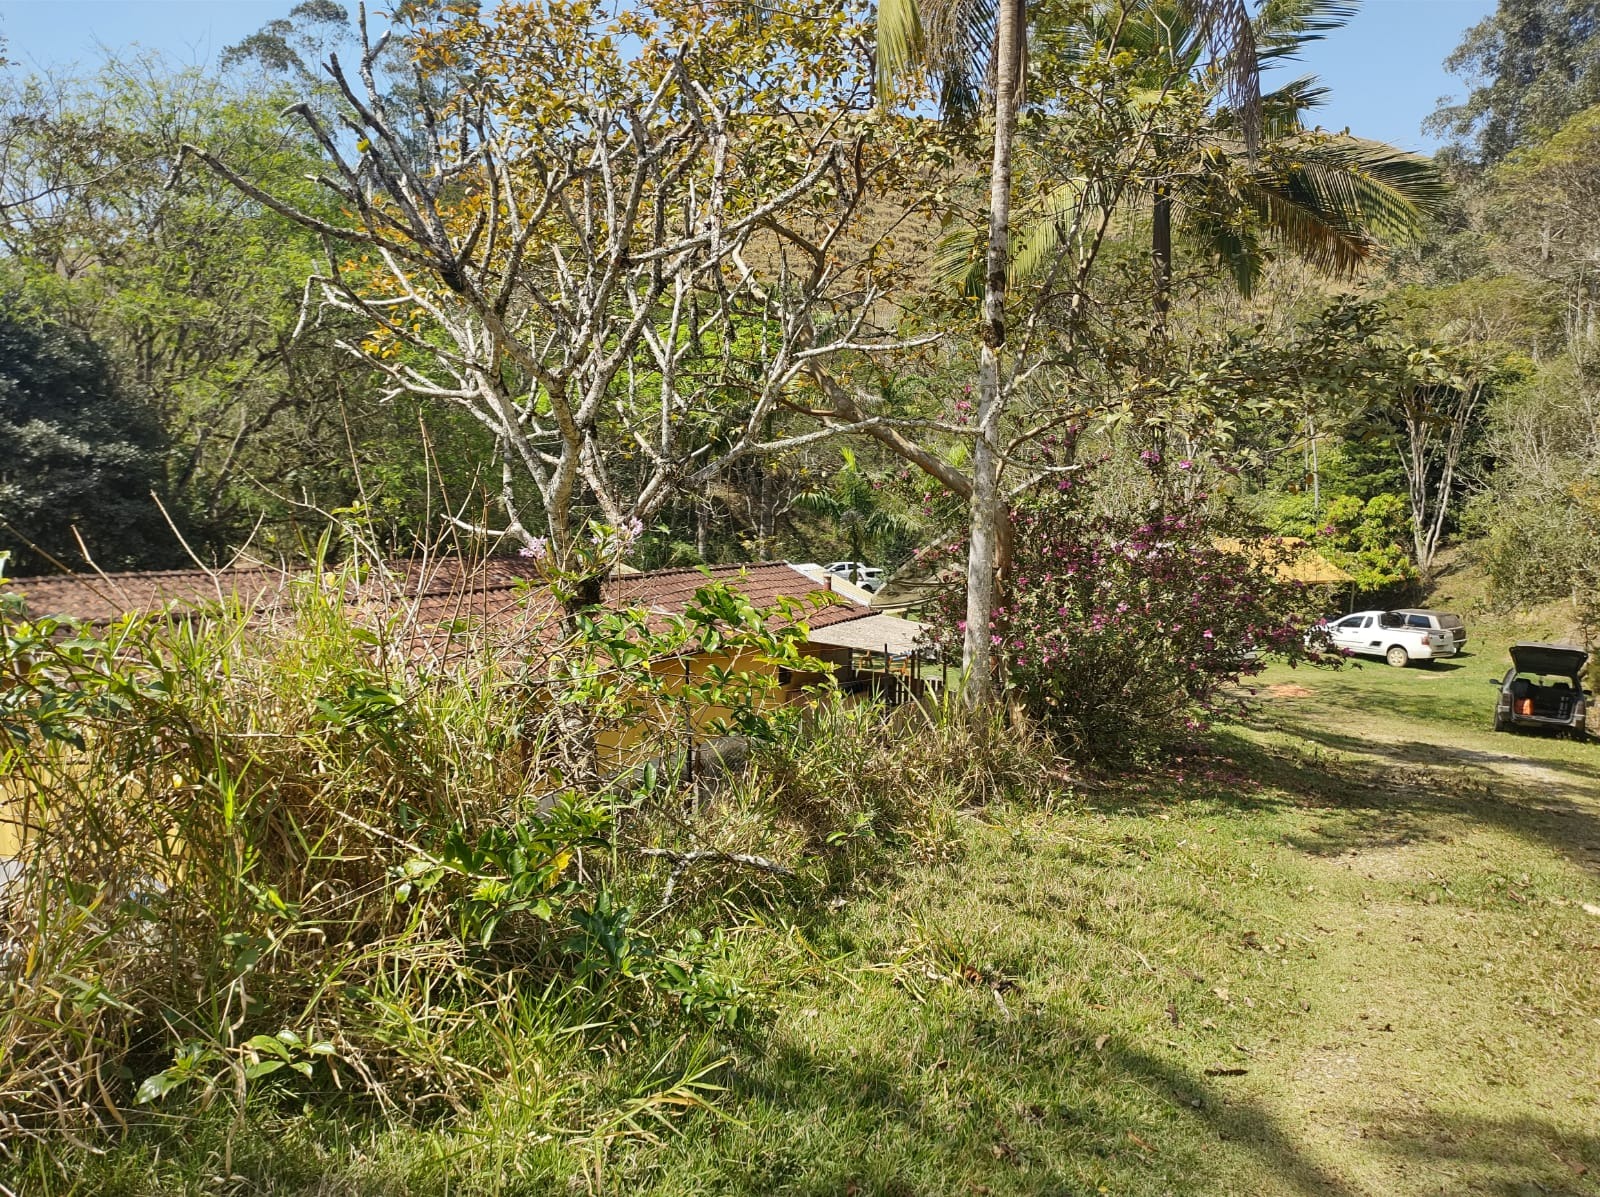 Fazenda de 39 ha em São José dos Campos, SP